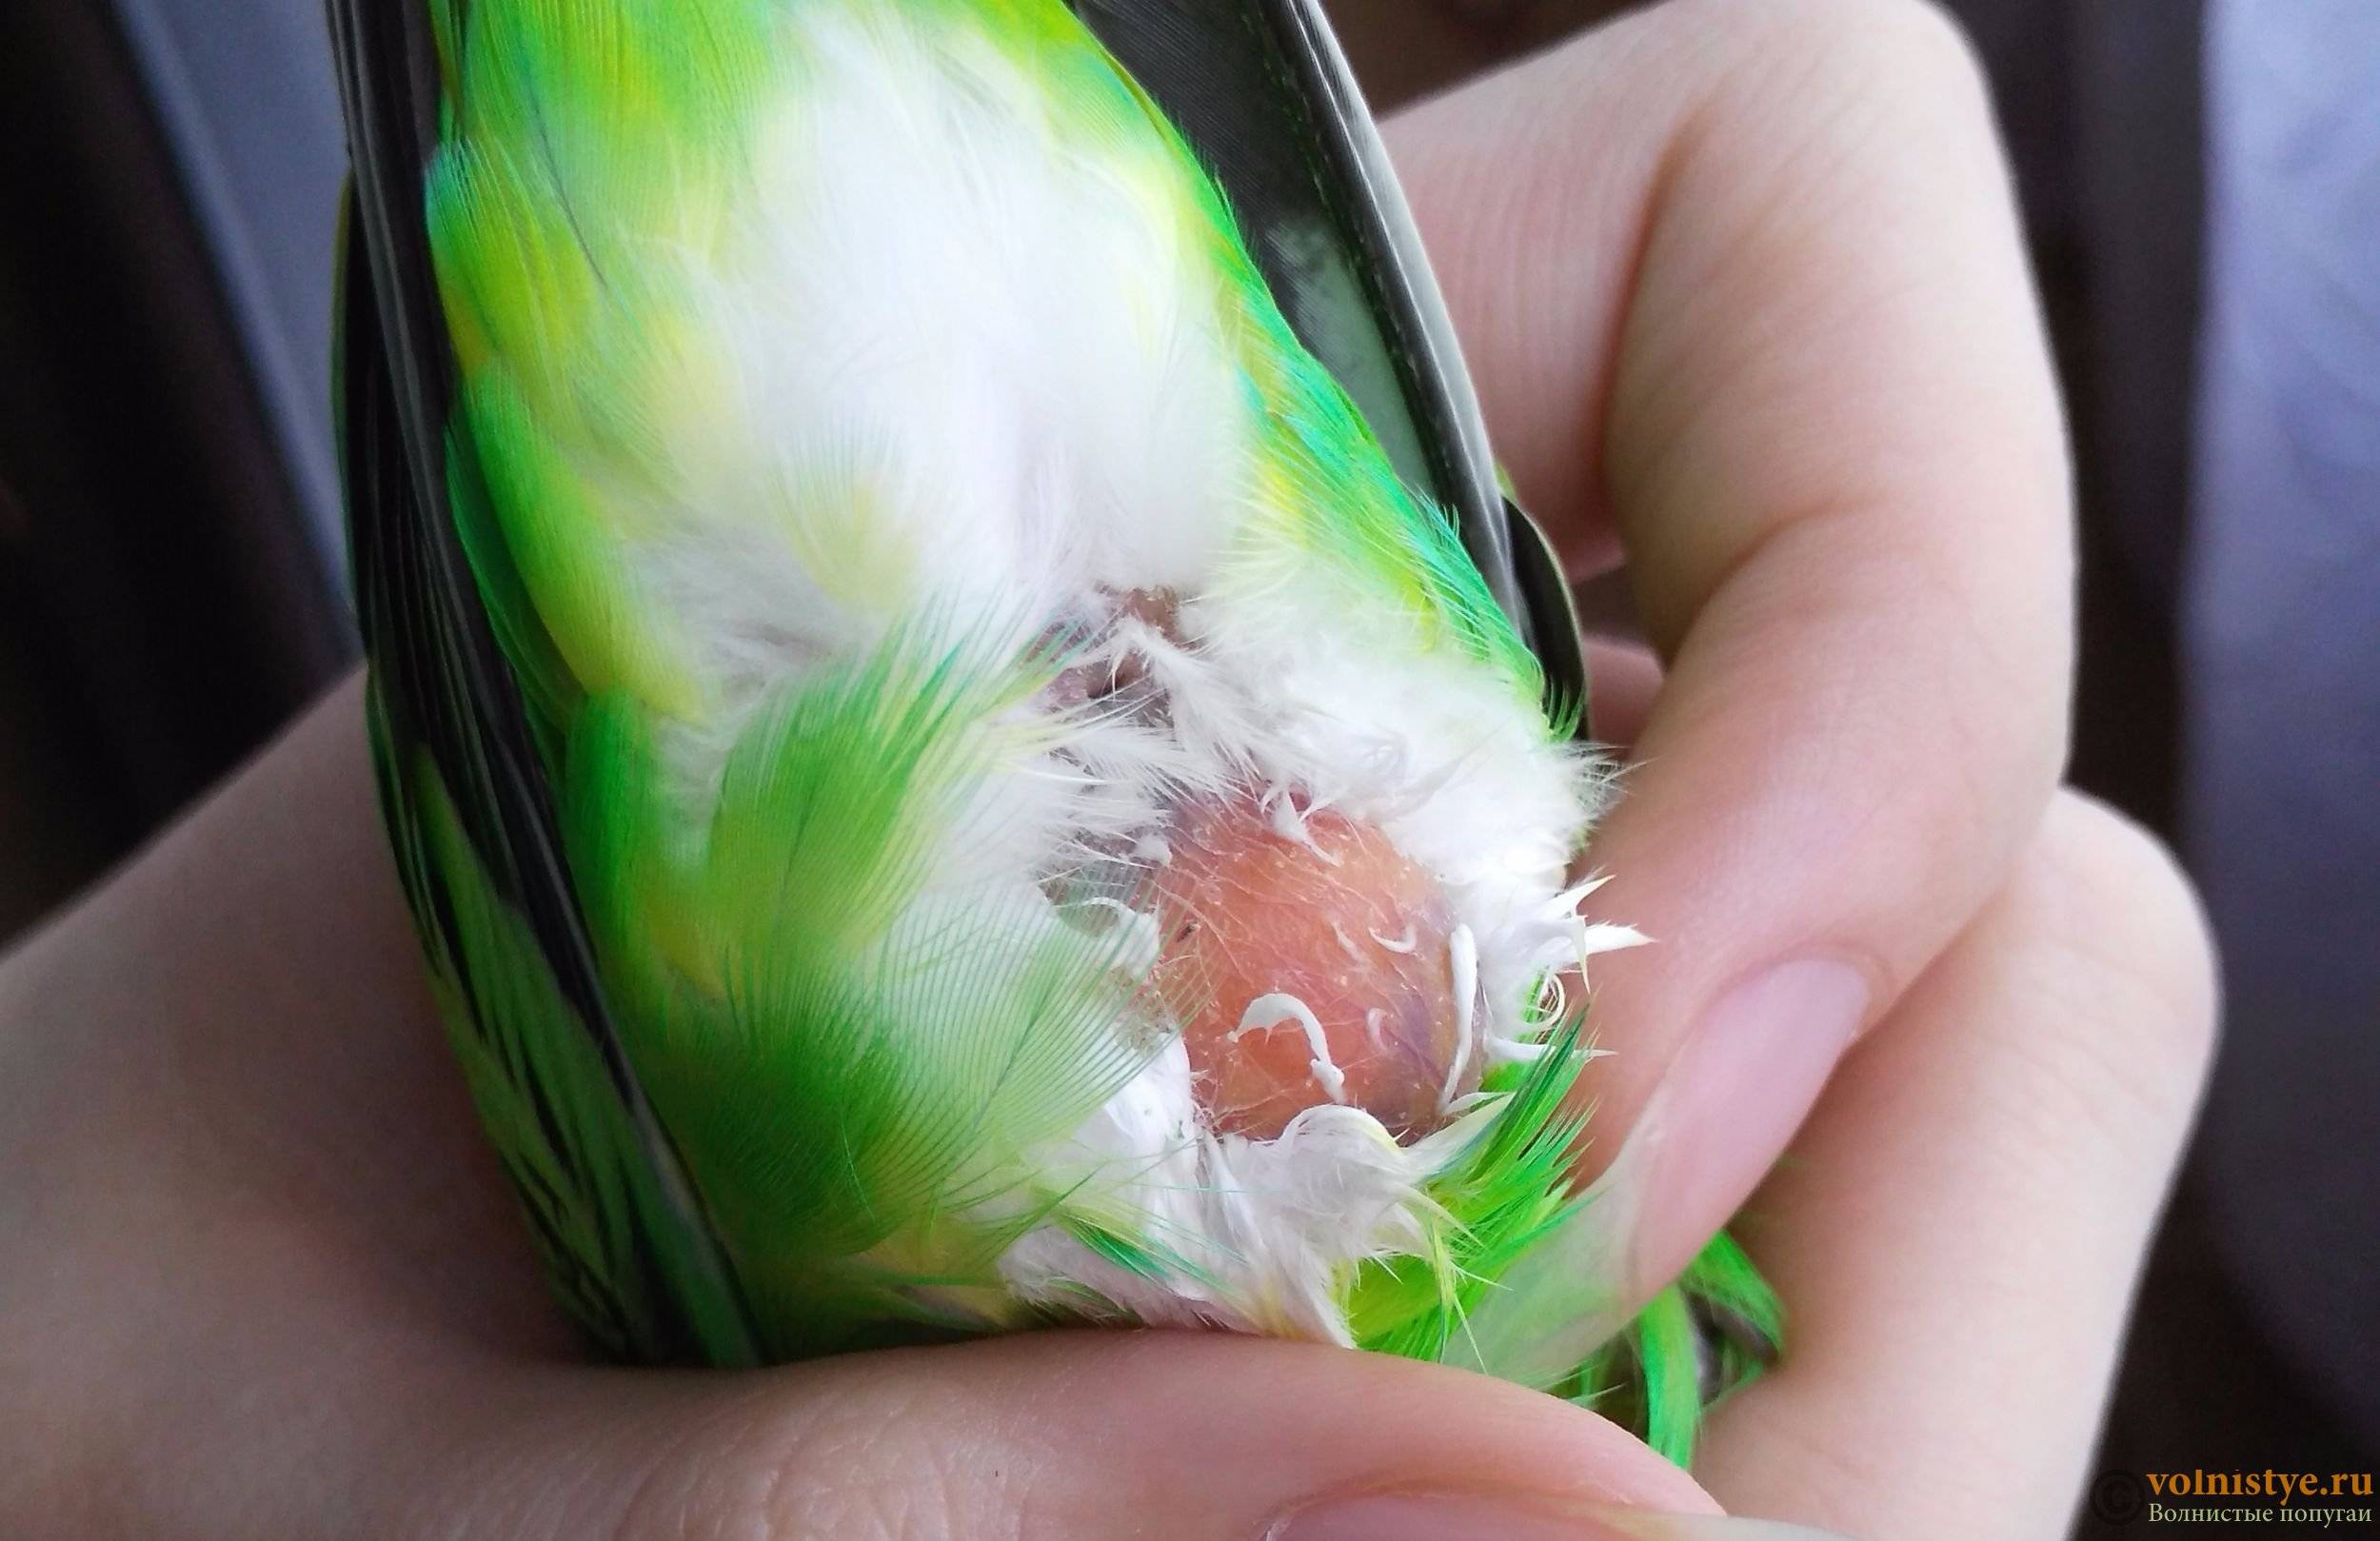 Симптомы и лечение воспаления зоба у волнистых попугаев